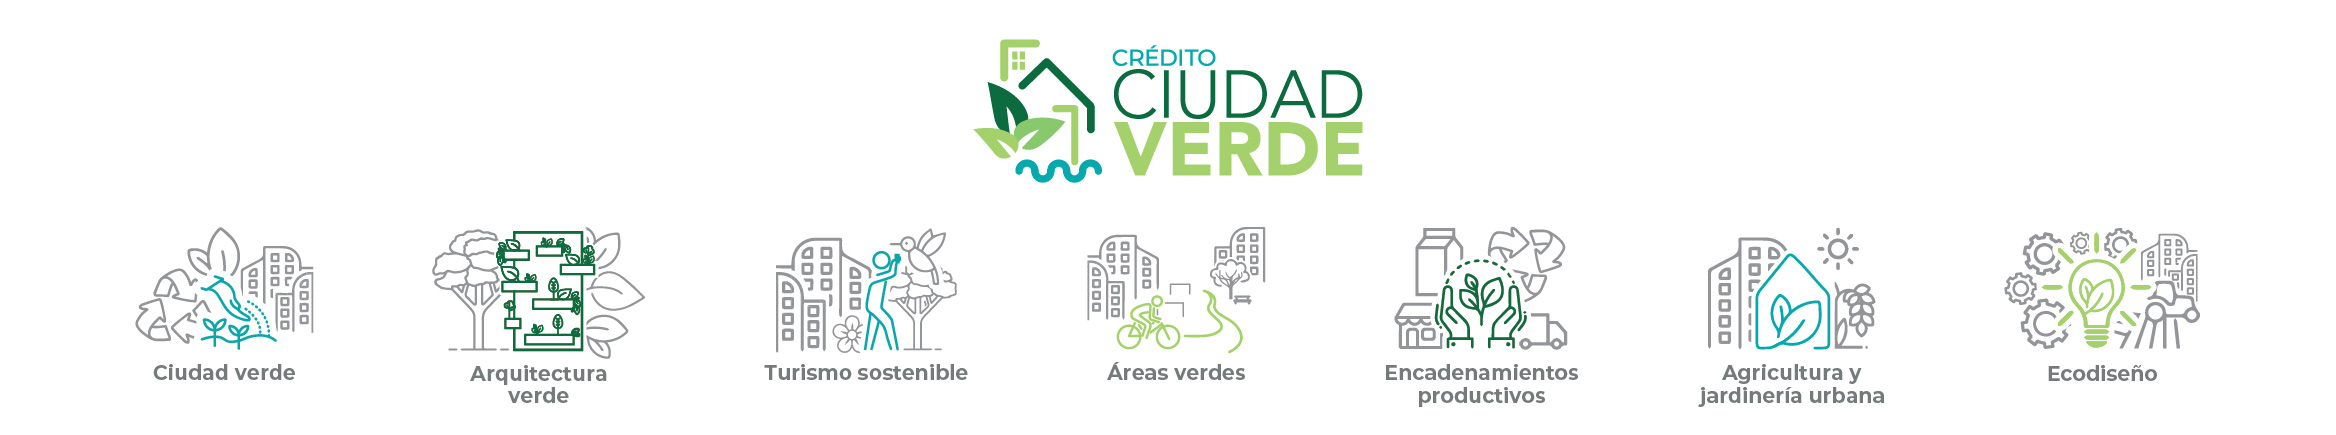 Infografía sobre áreas que financia el Crédito Ciudad Verde con Fondos Reembolsables